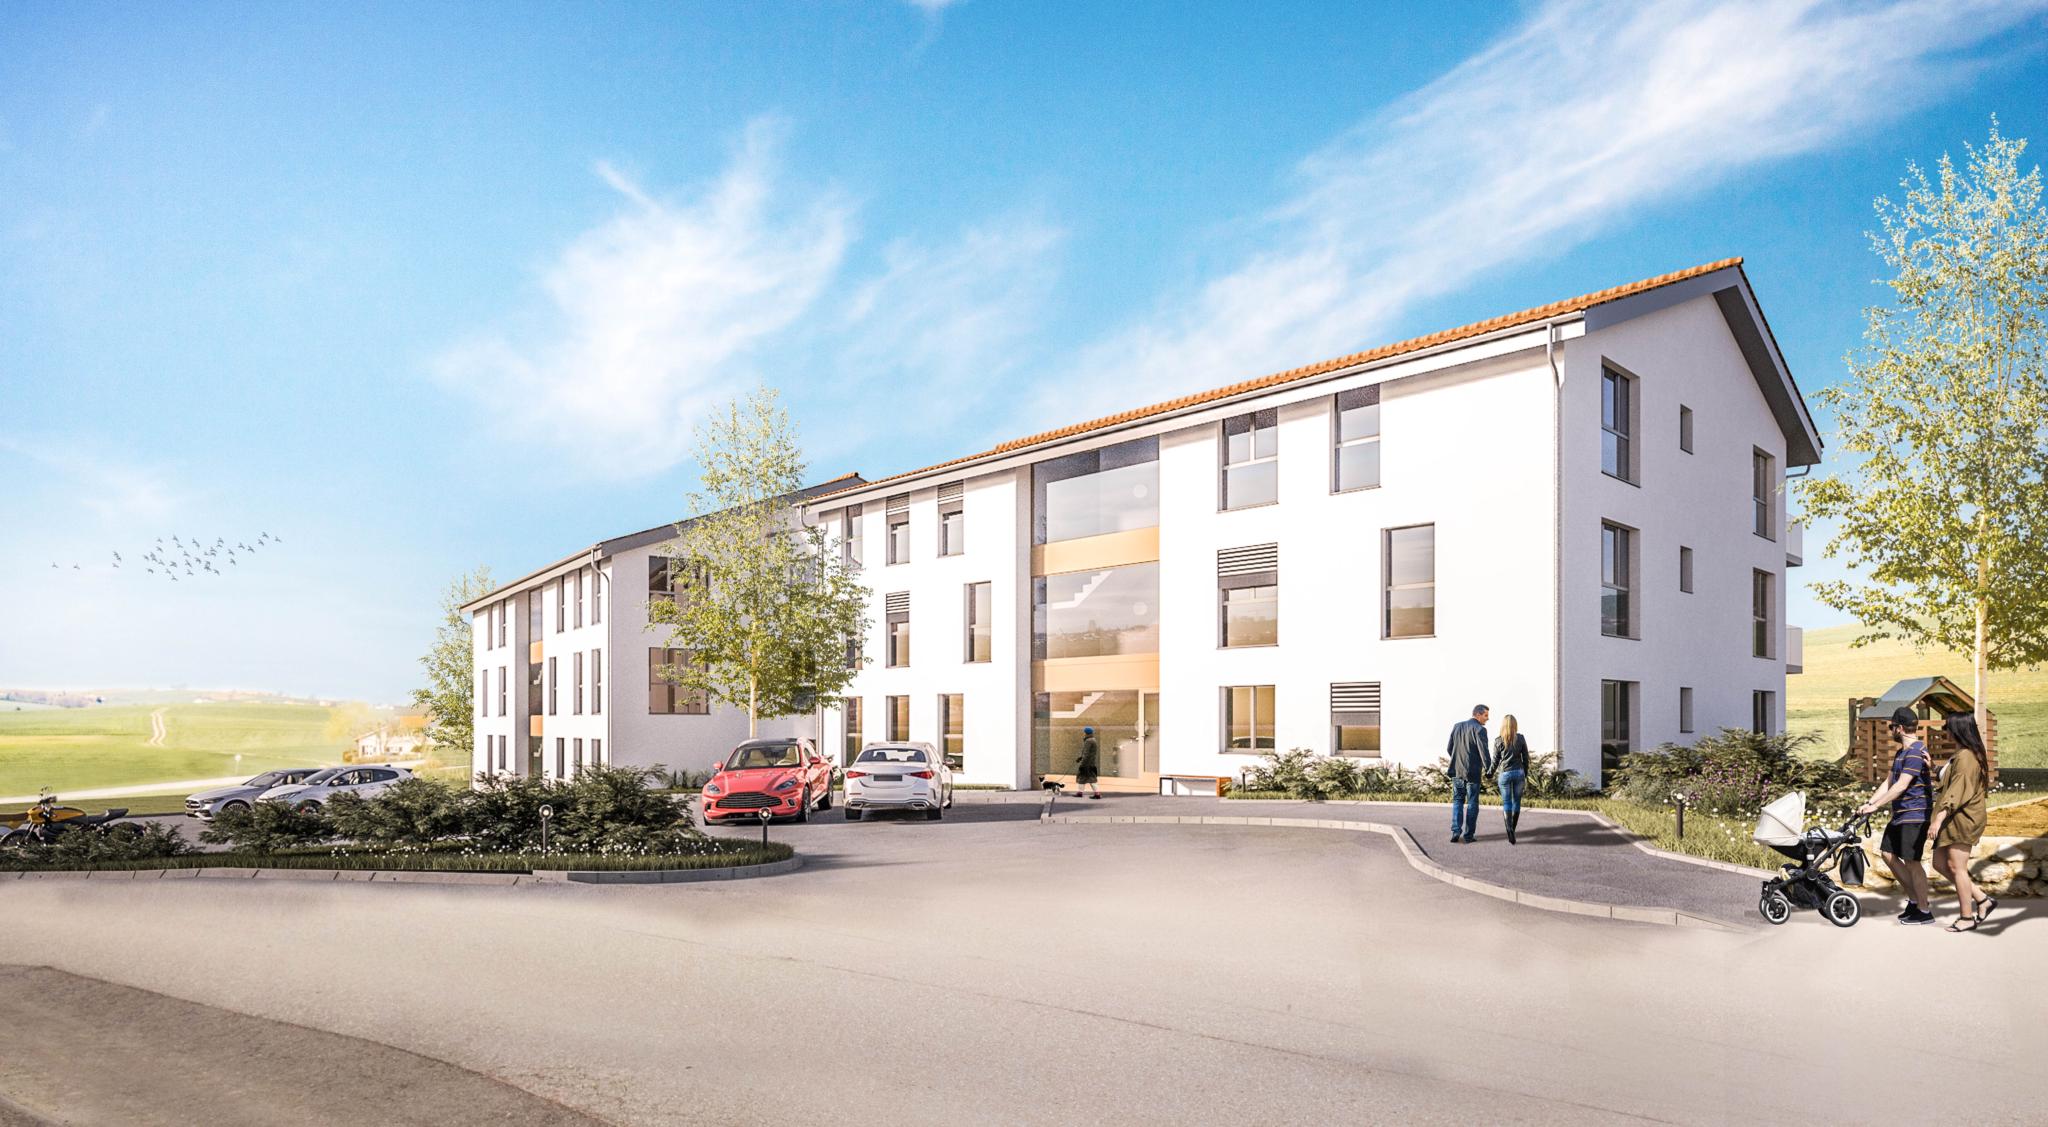 Promotion en cours de construction de 16 appartements entre Romont, Bulle et Fribourg !